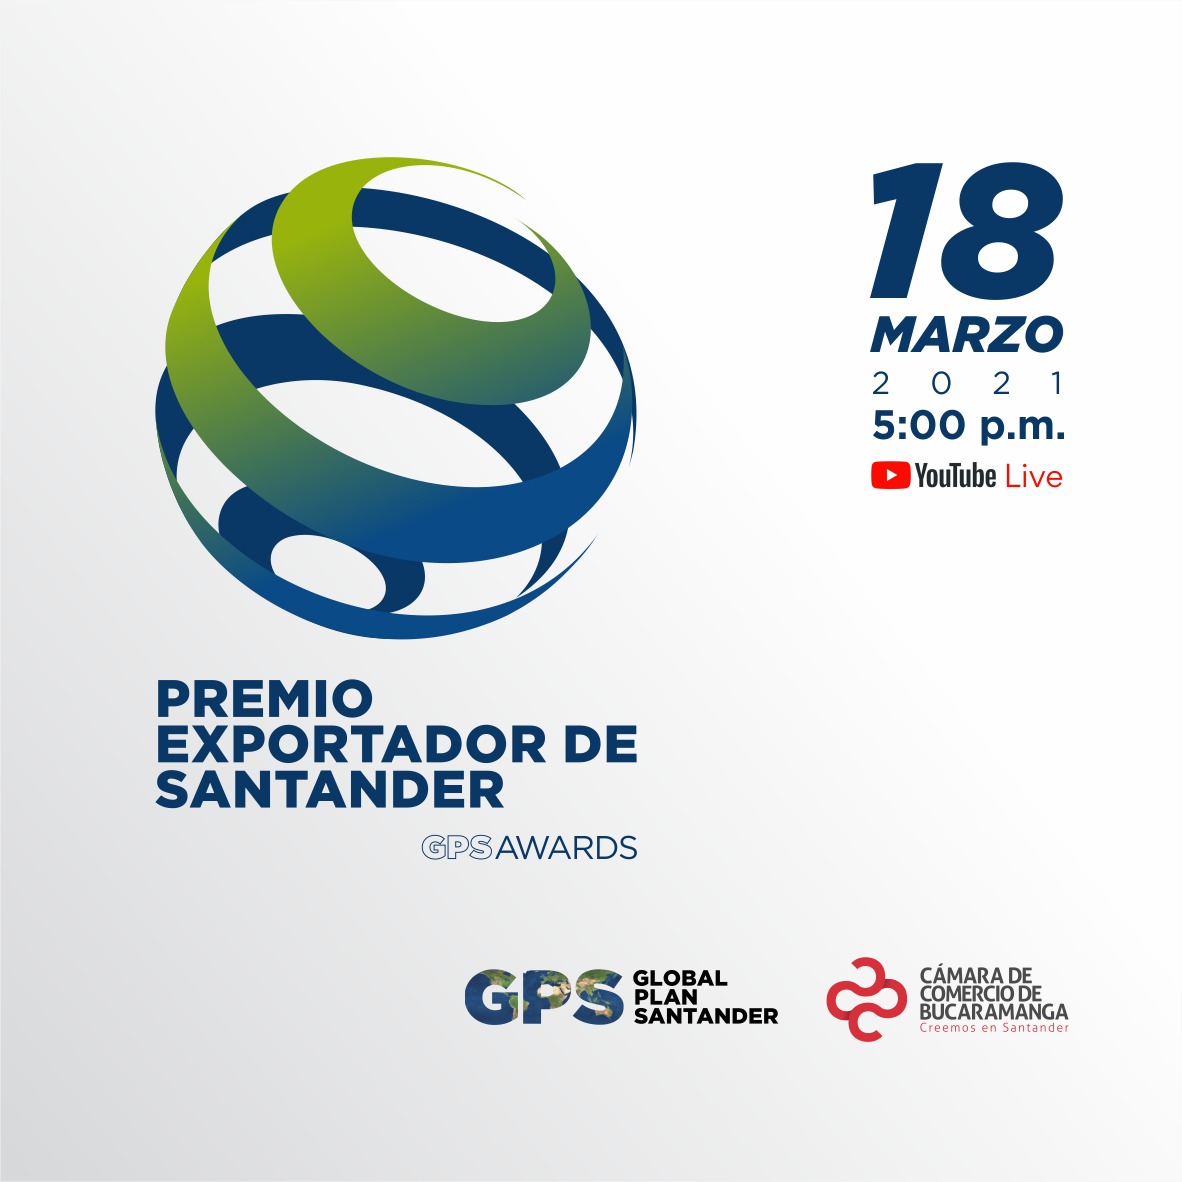 La Cámara de Comercio de Bucaramanga exaltará a los exportadores santandereanos en los GPS Awards